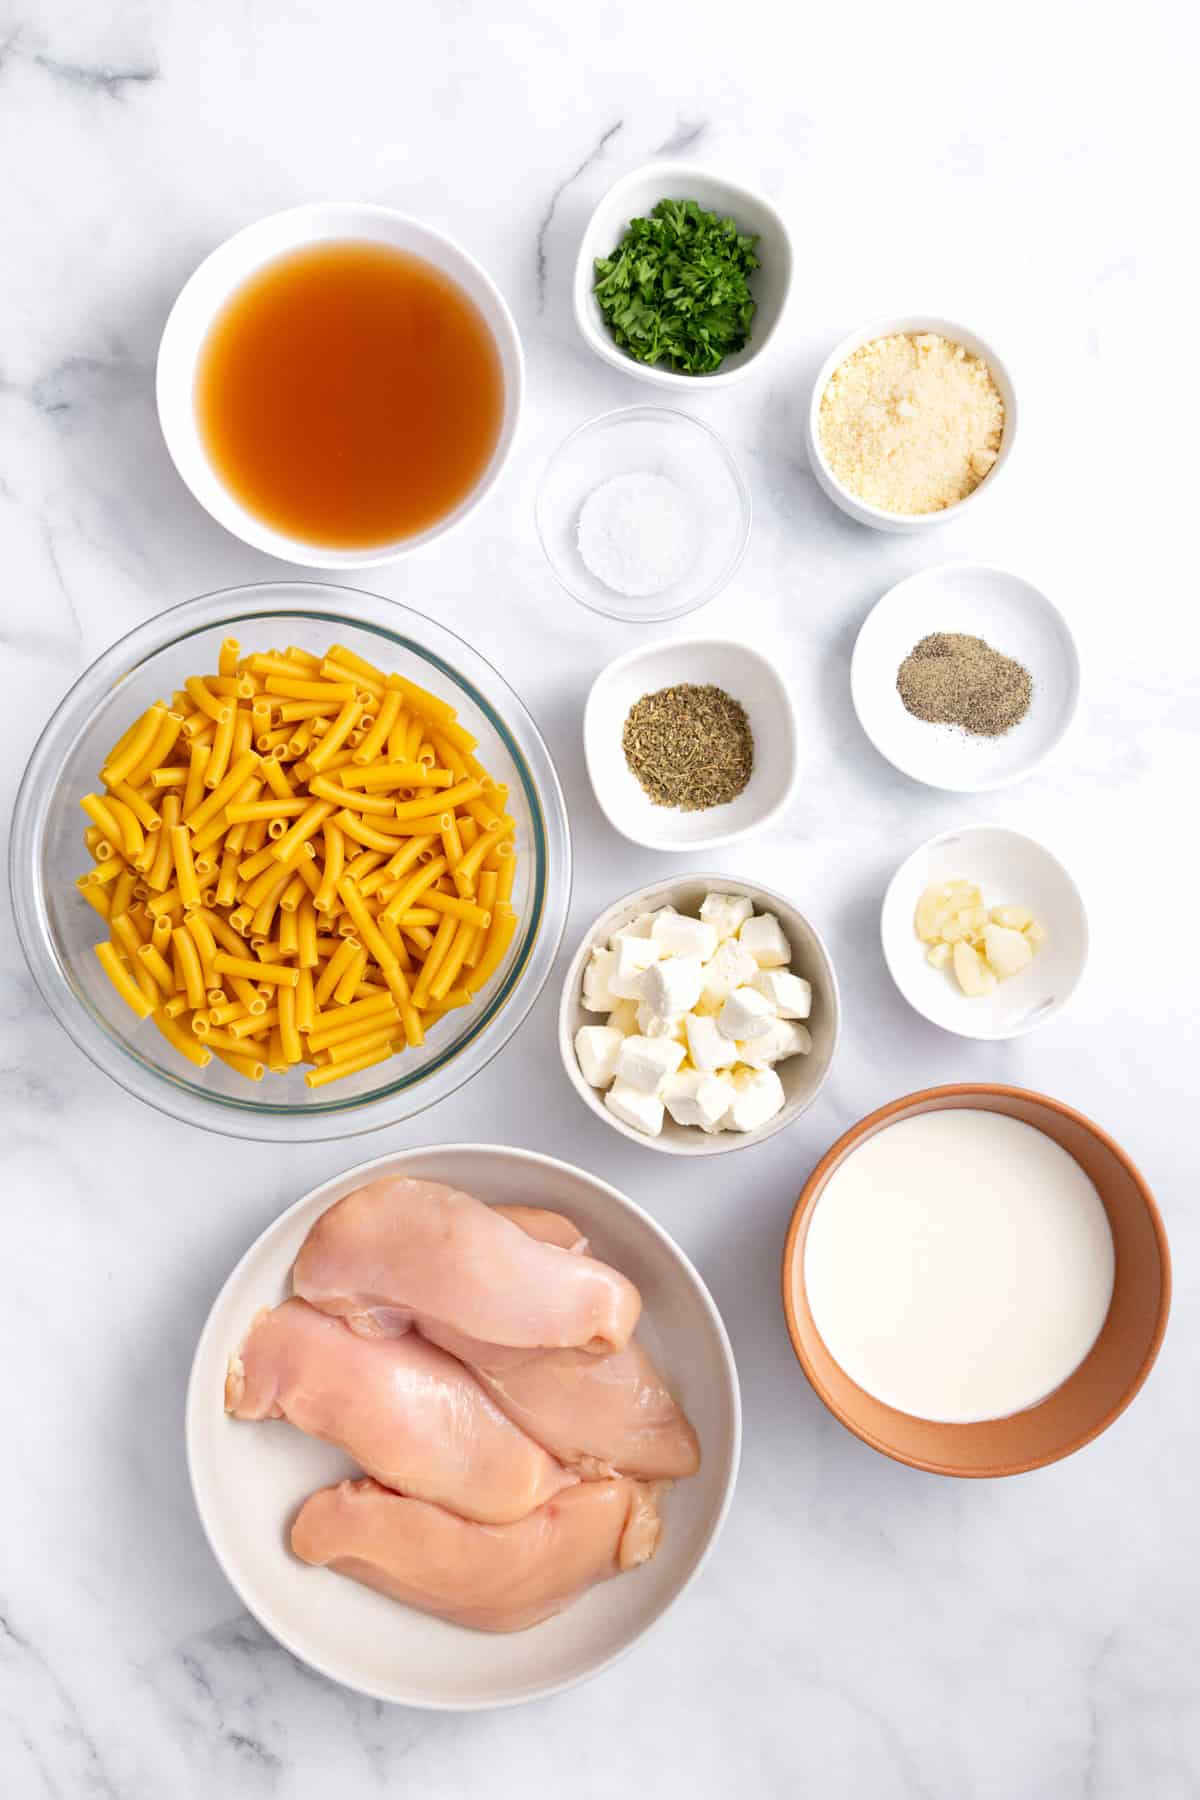 ingredients to make crockpot chicken alfredo.